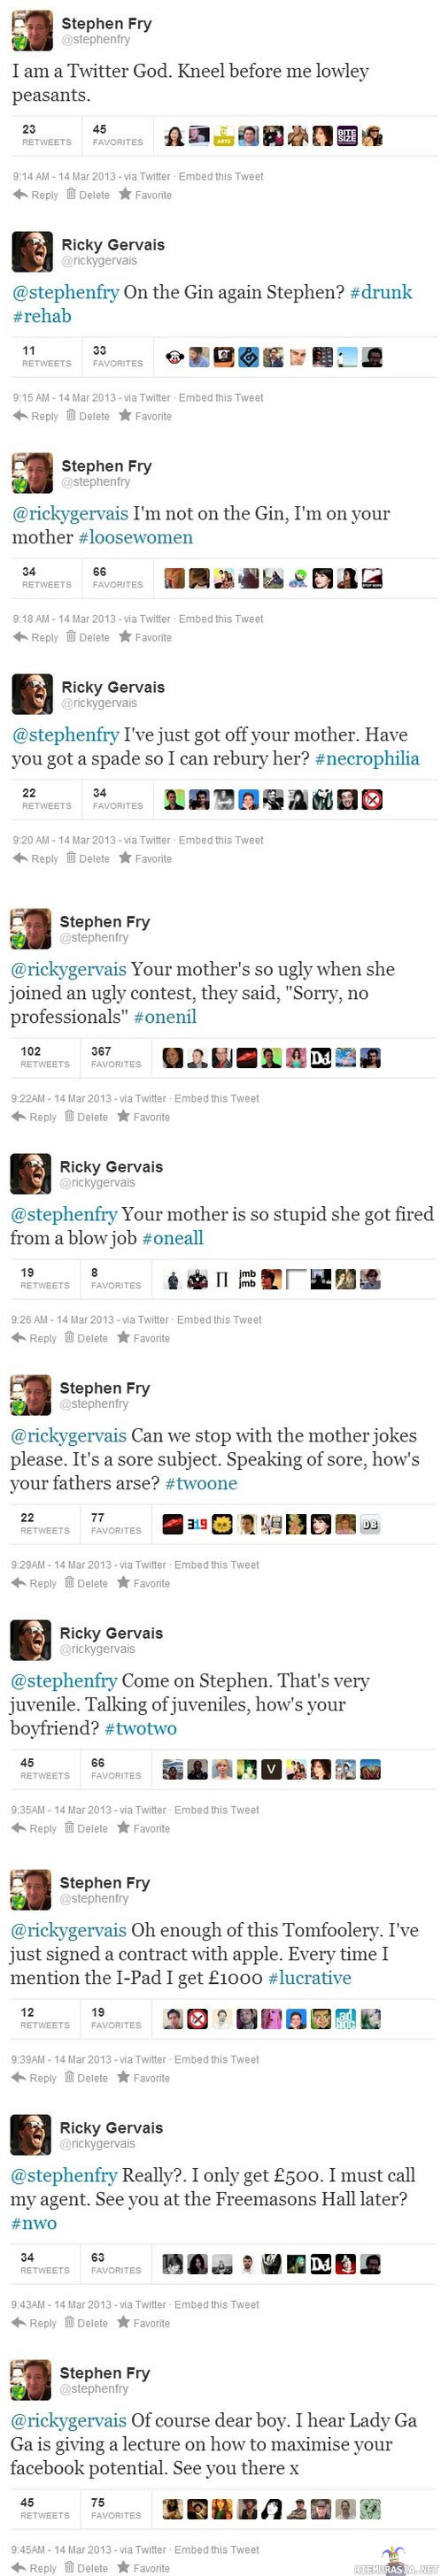 Ricky Gervais vs. Stephen Fry